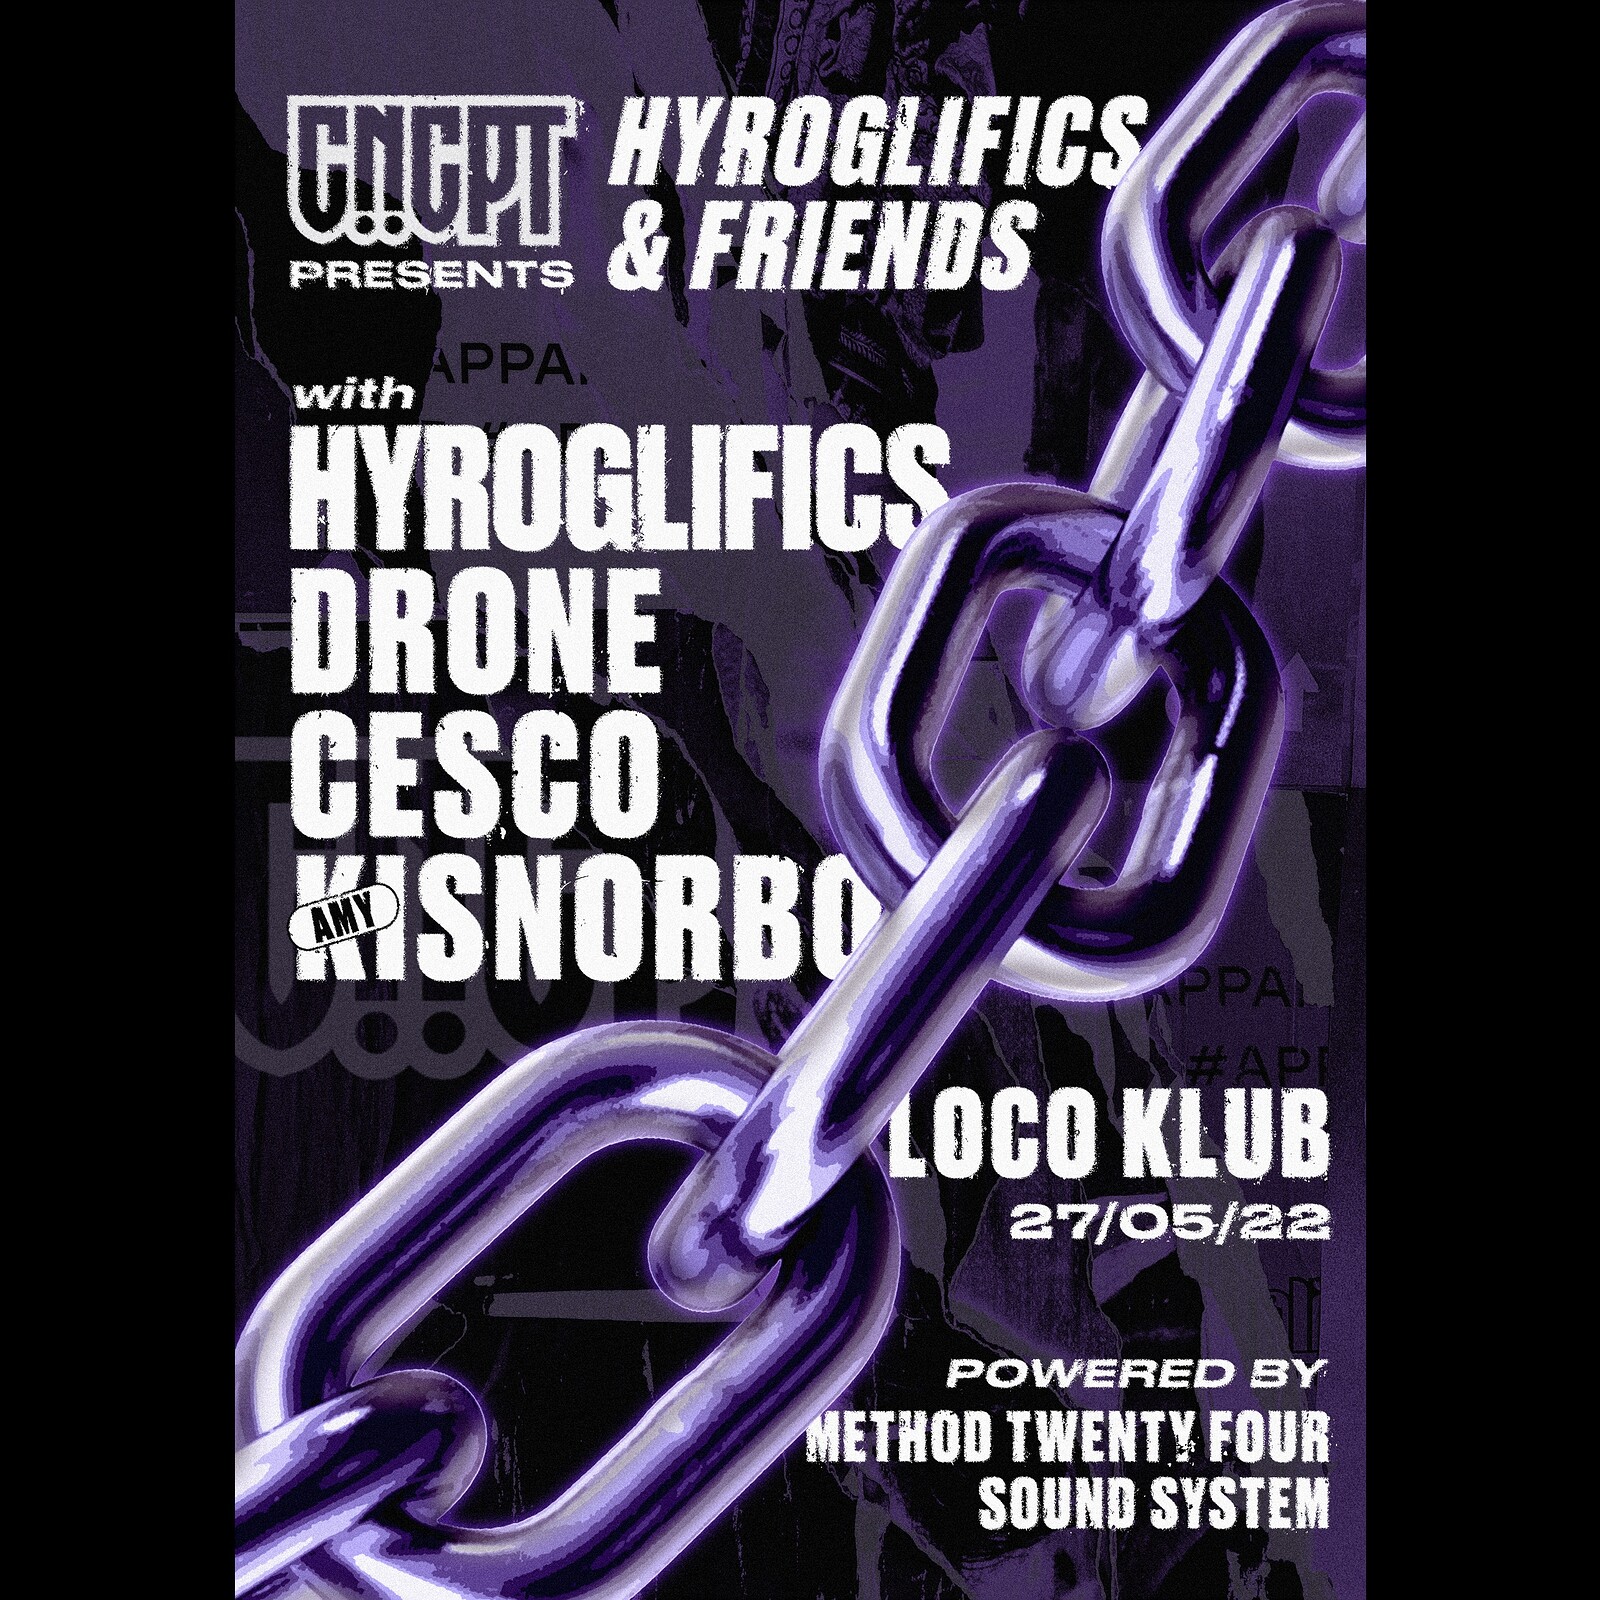 CNCPT Presents: Hyroglifics & Friends at The Loco Klub